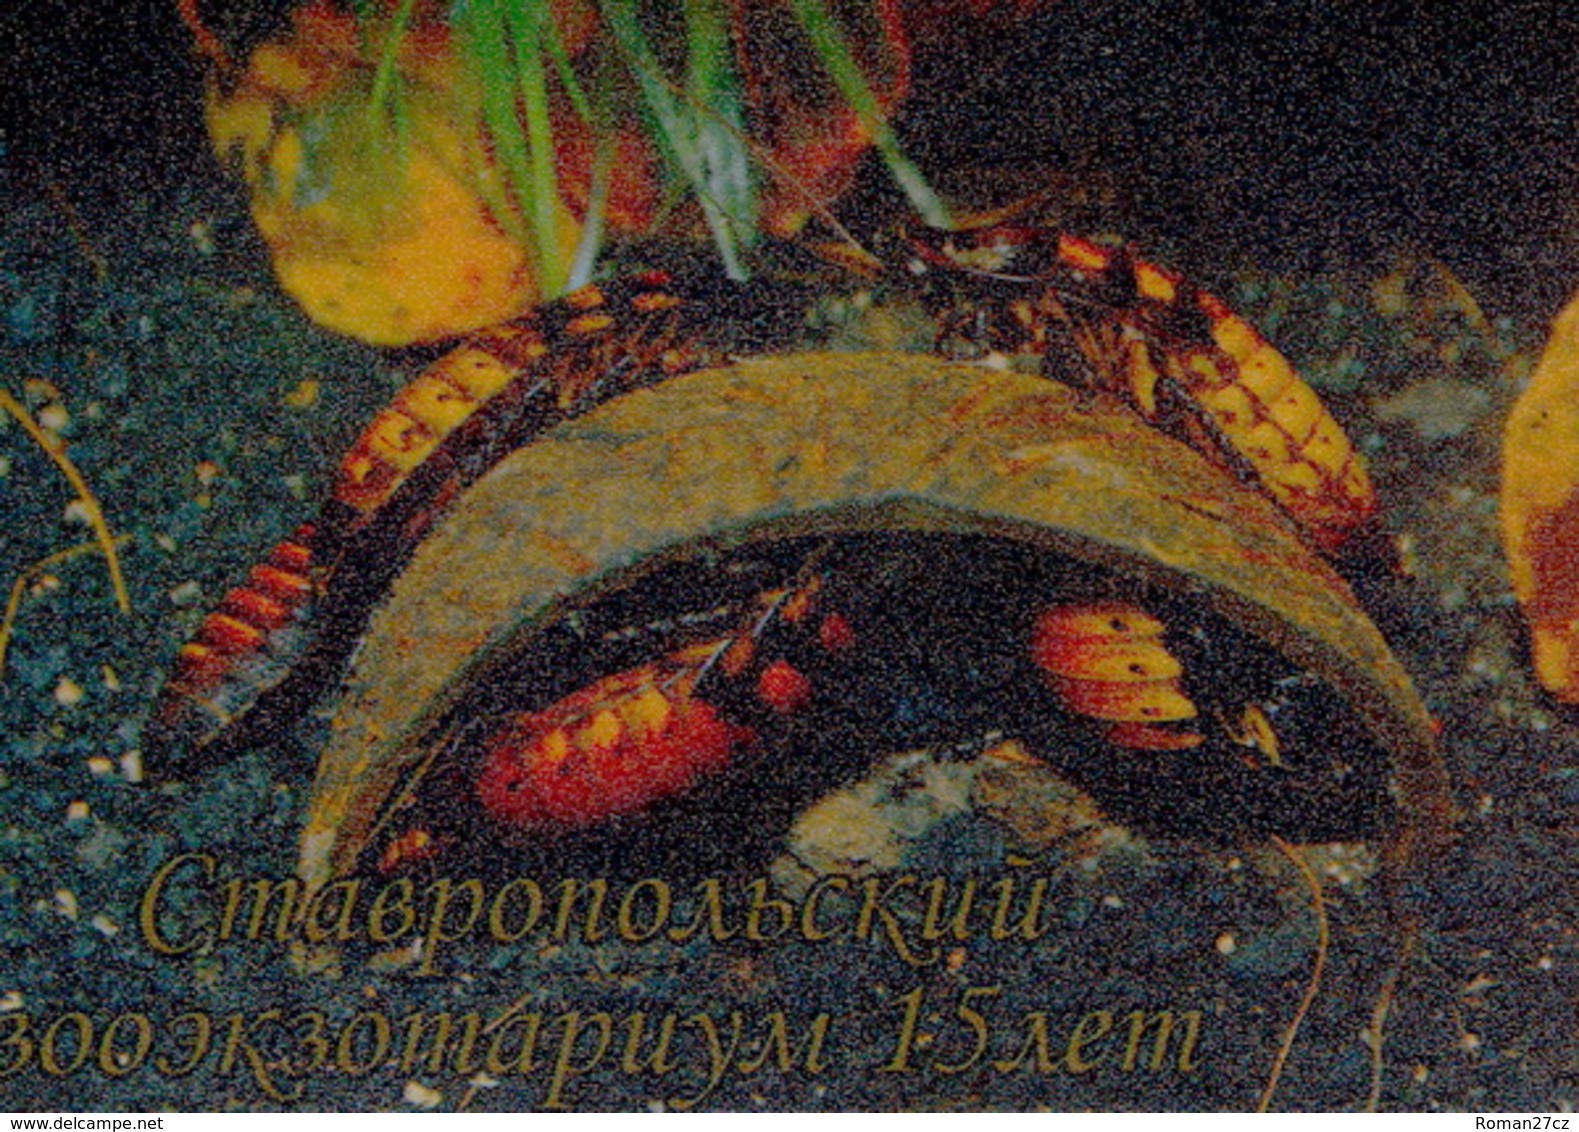 Zooexotarium Stavropol (RU) - Cockroaches - Animals & Fauna